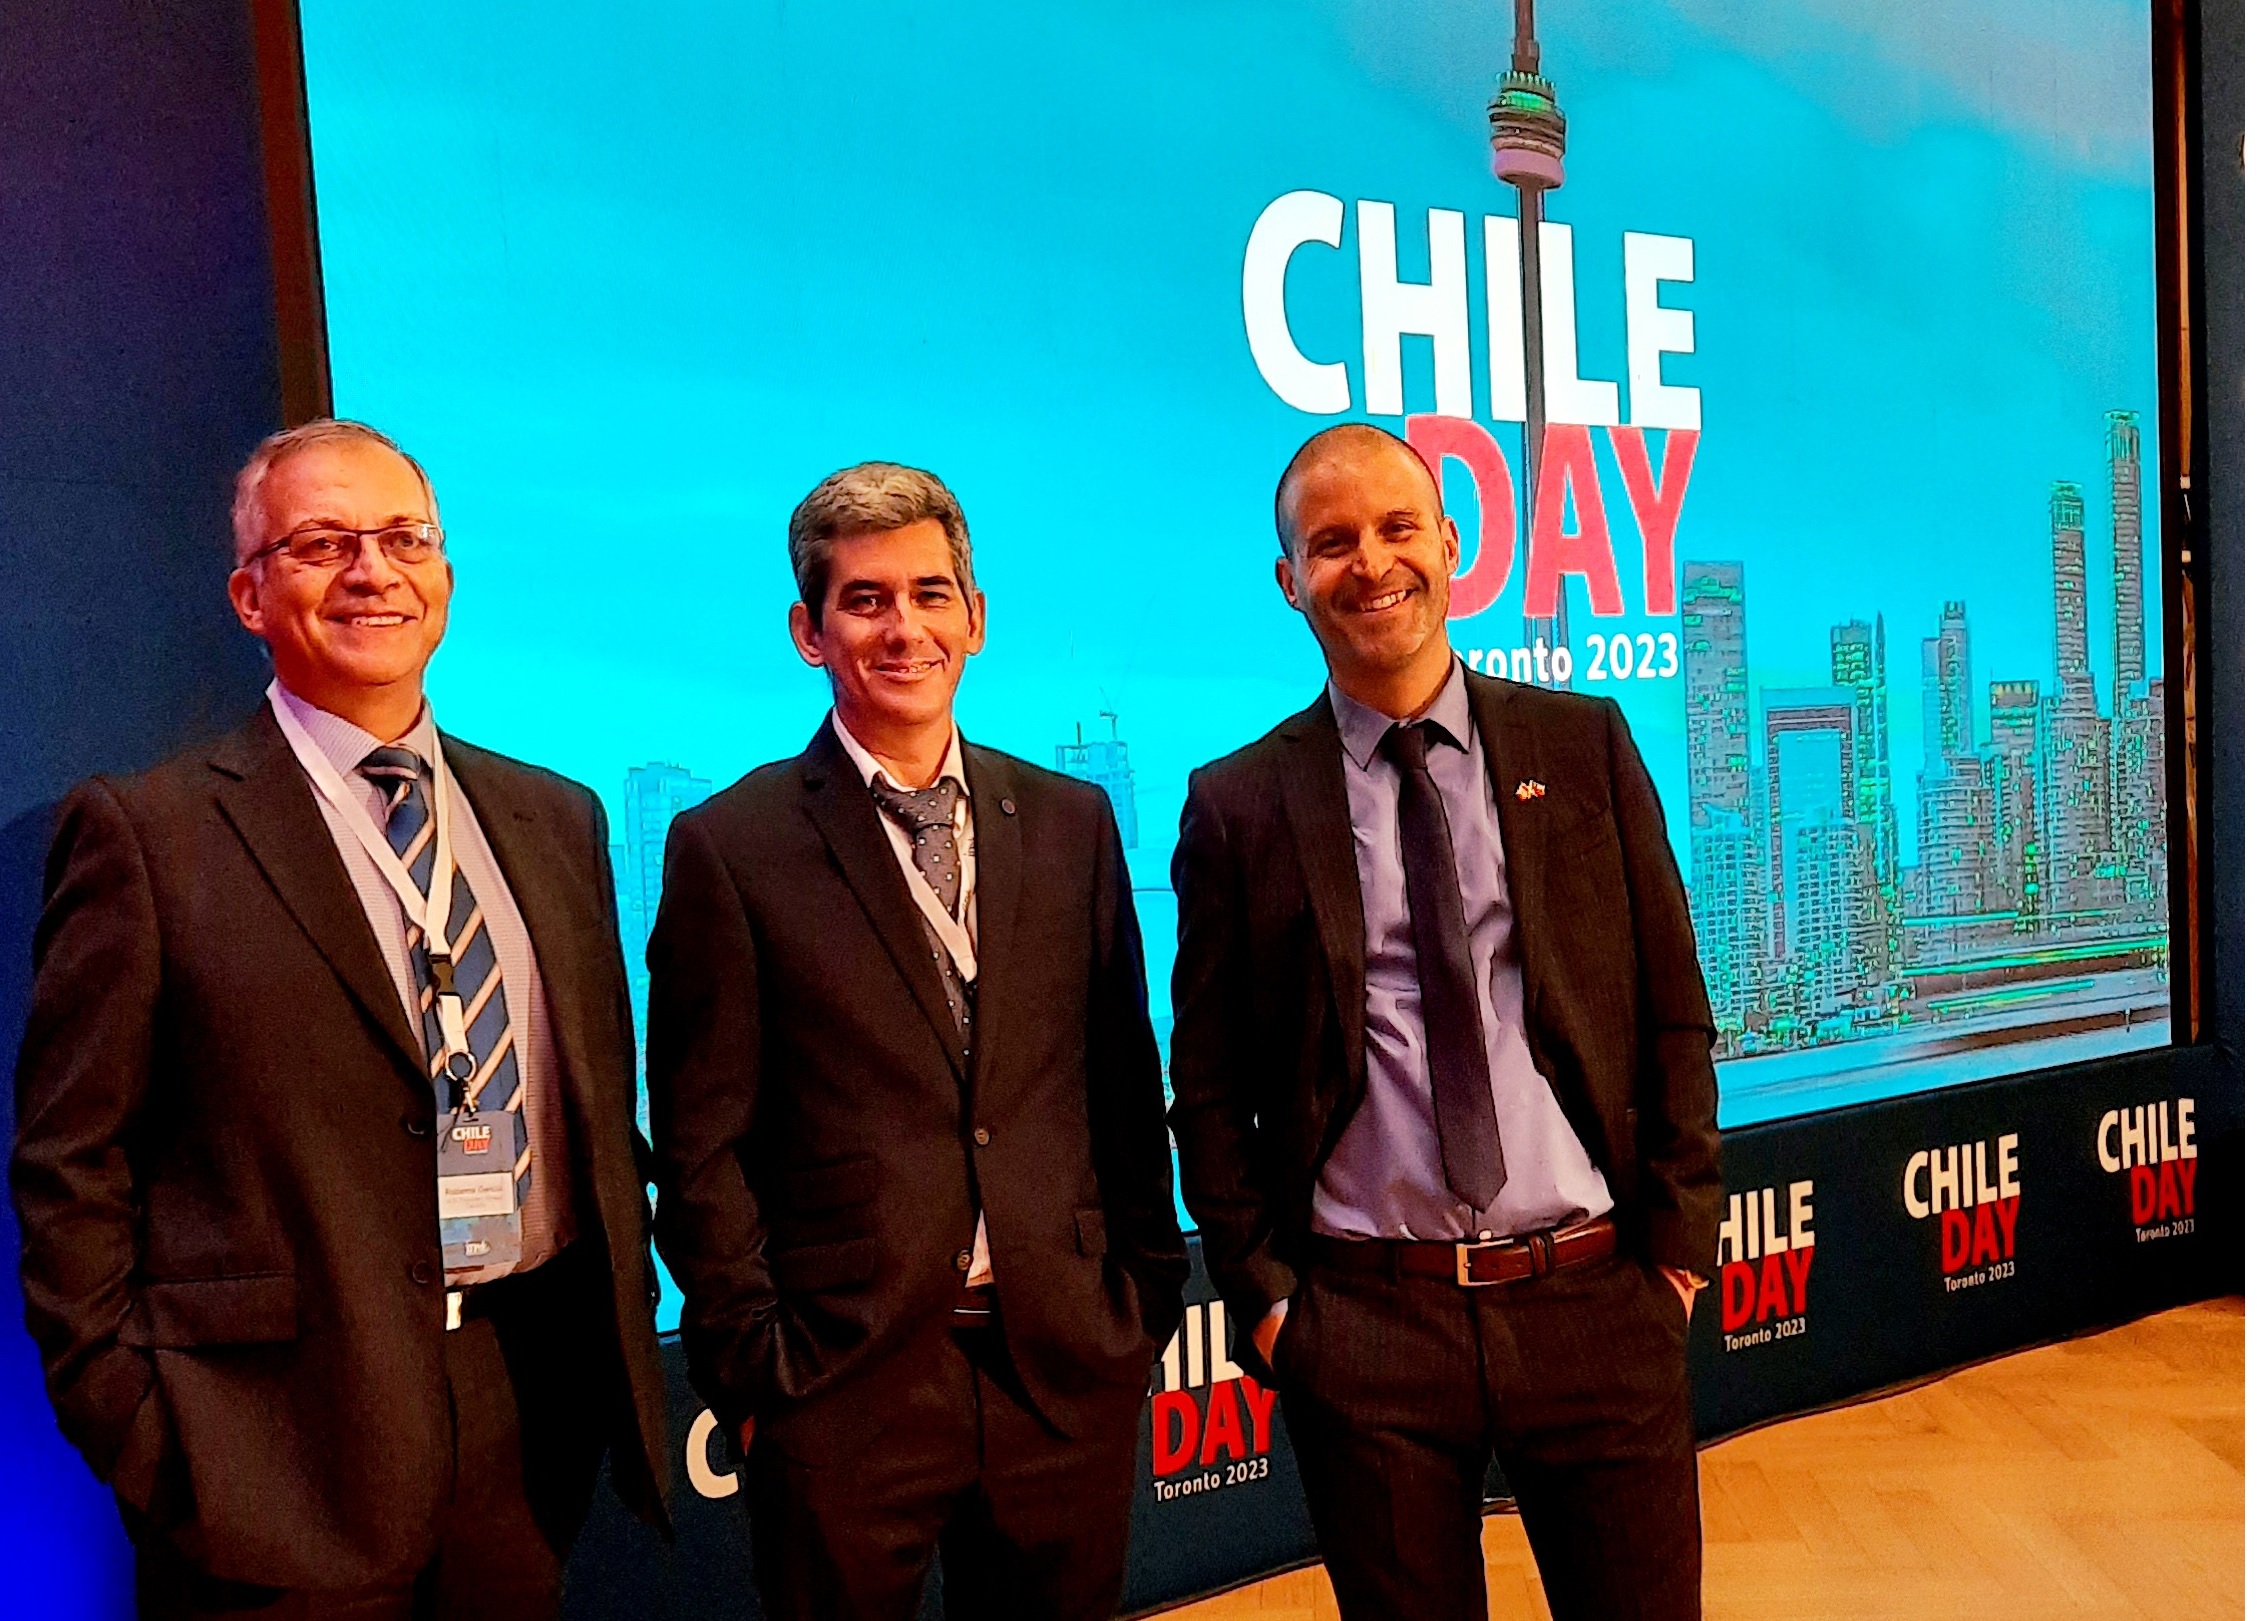 A.R. Thomson Chile participa de Chile Day Toronto 2023